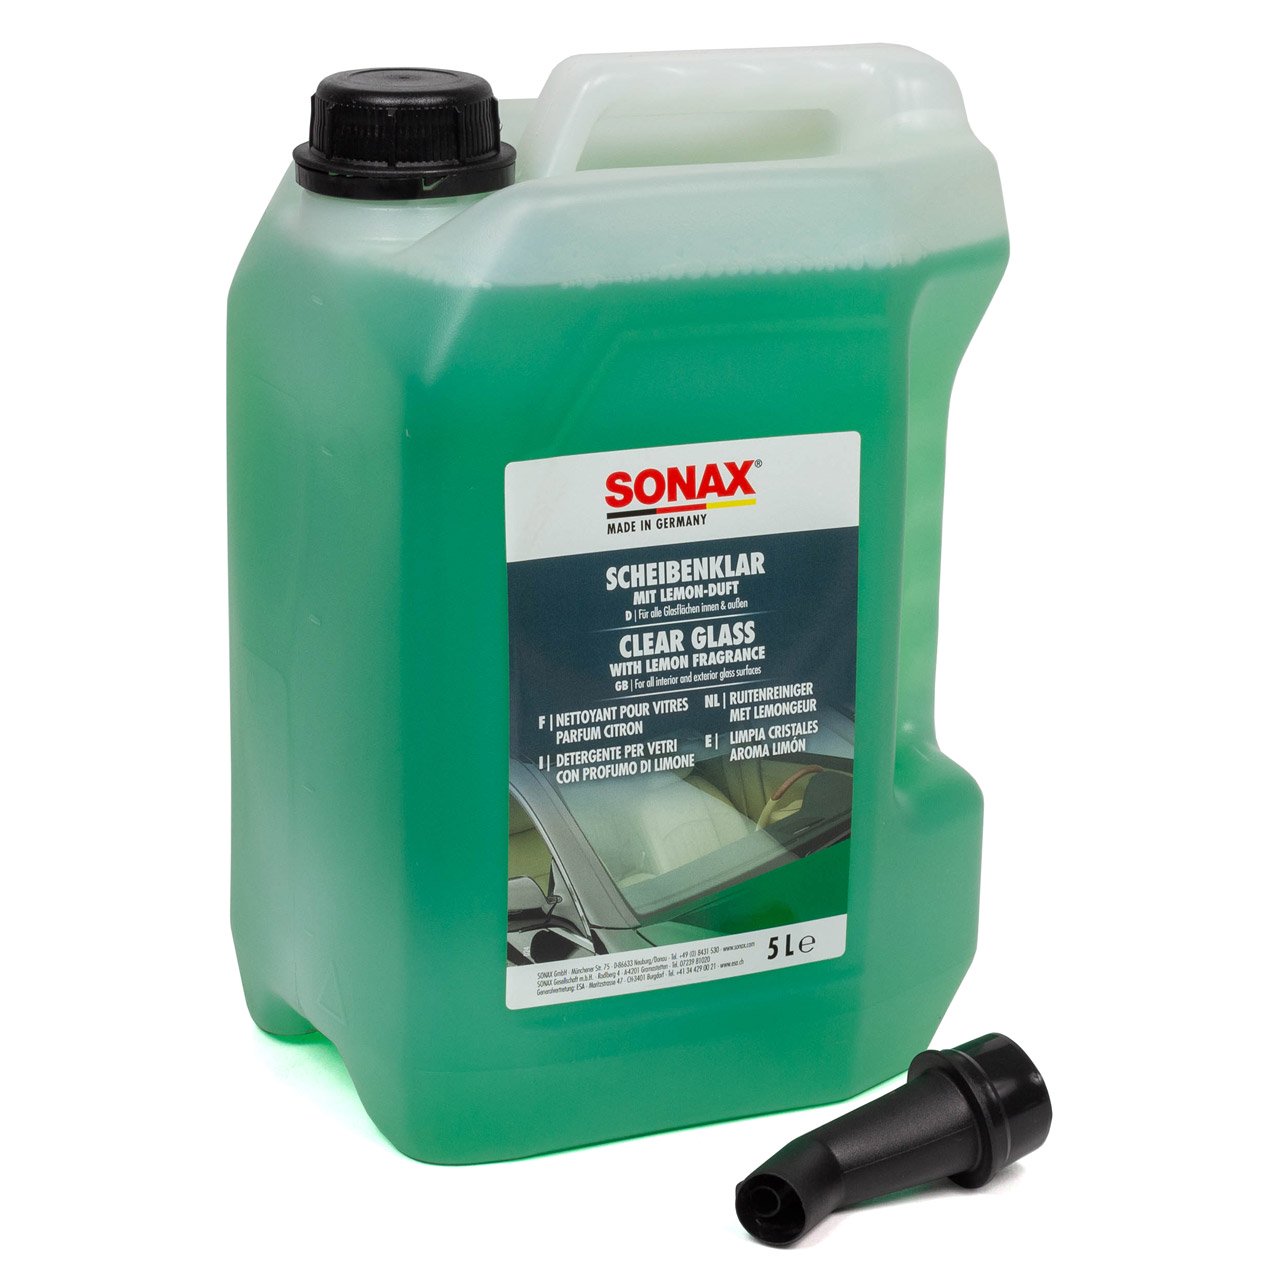 SONAX Scheibenreiniger Scheibenklar Glasreiniger Reiniger Set 5 Liter + 500ml